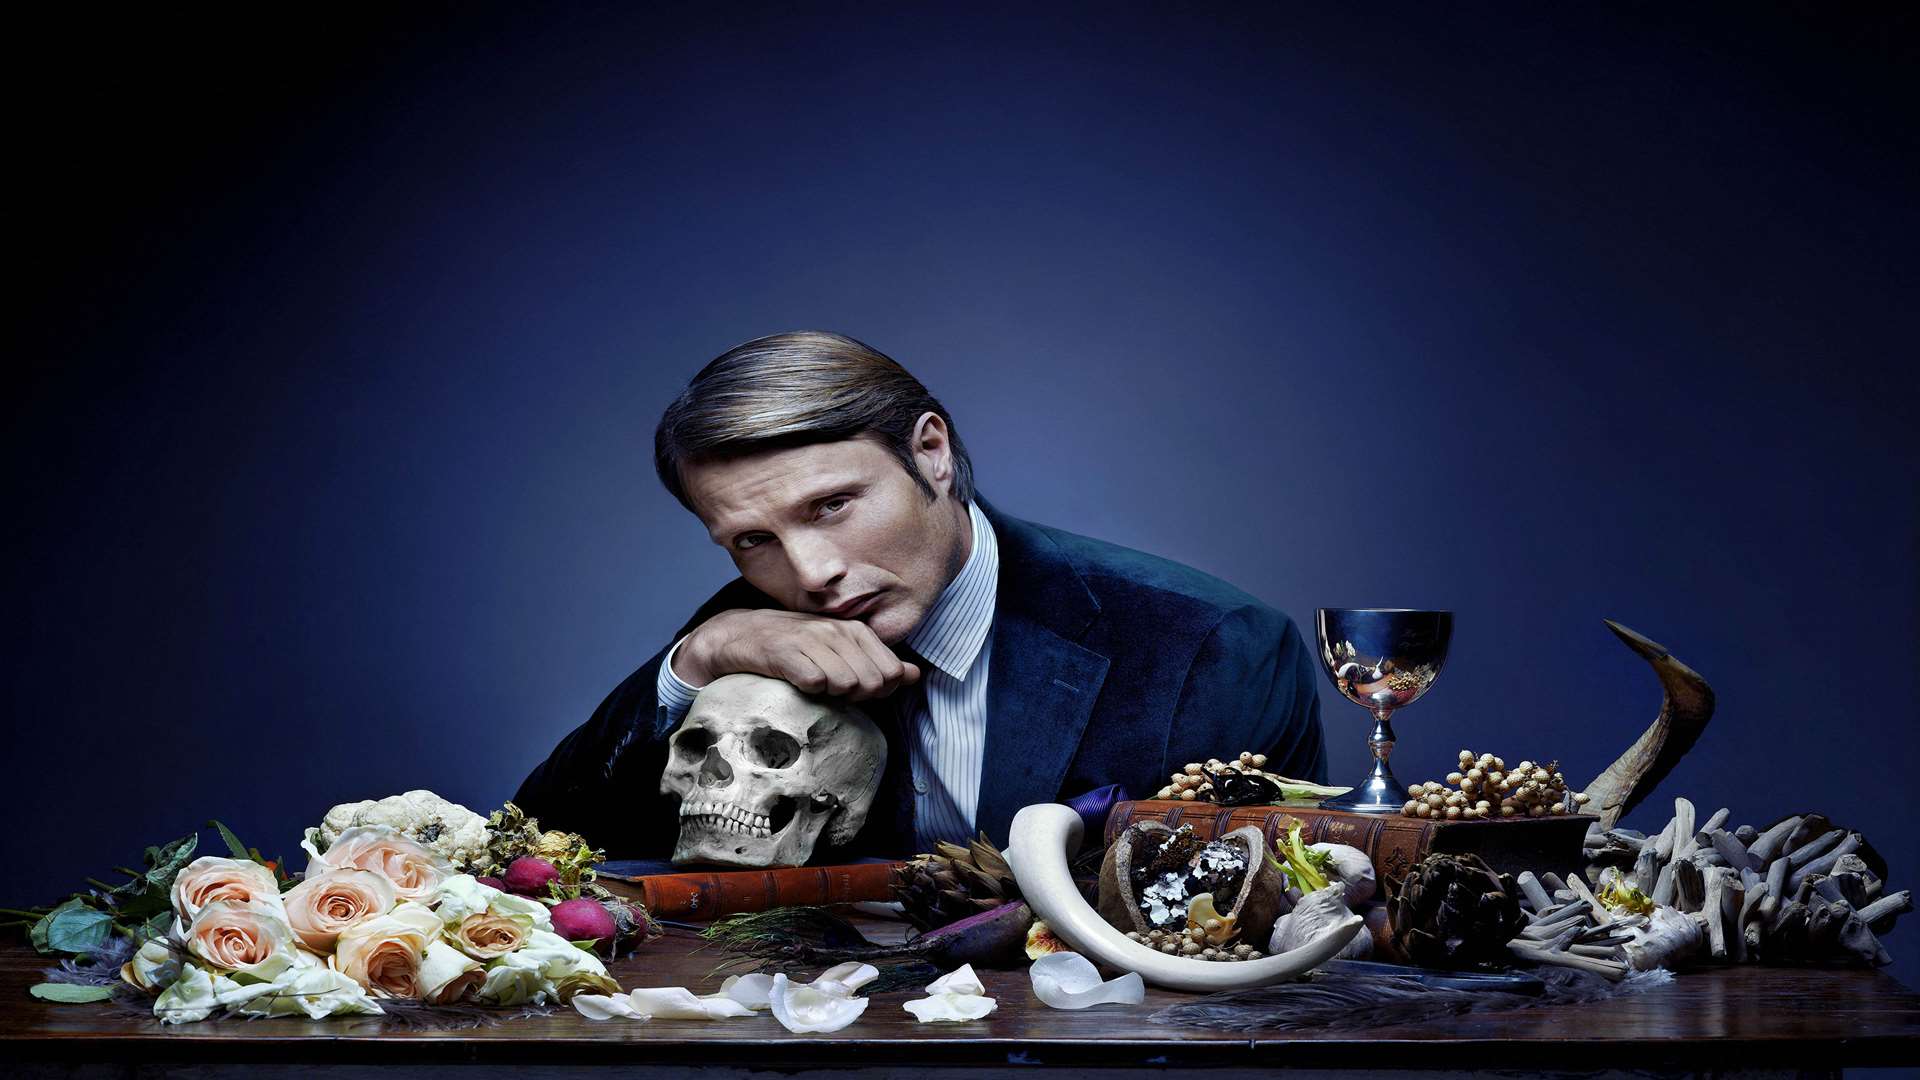 Mads Mikkelsen stars in new Sky Living drama series Hannibal